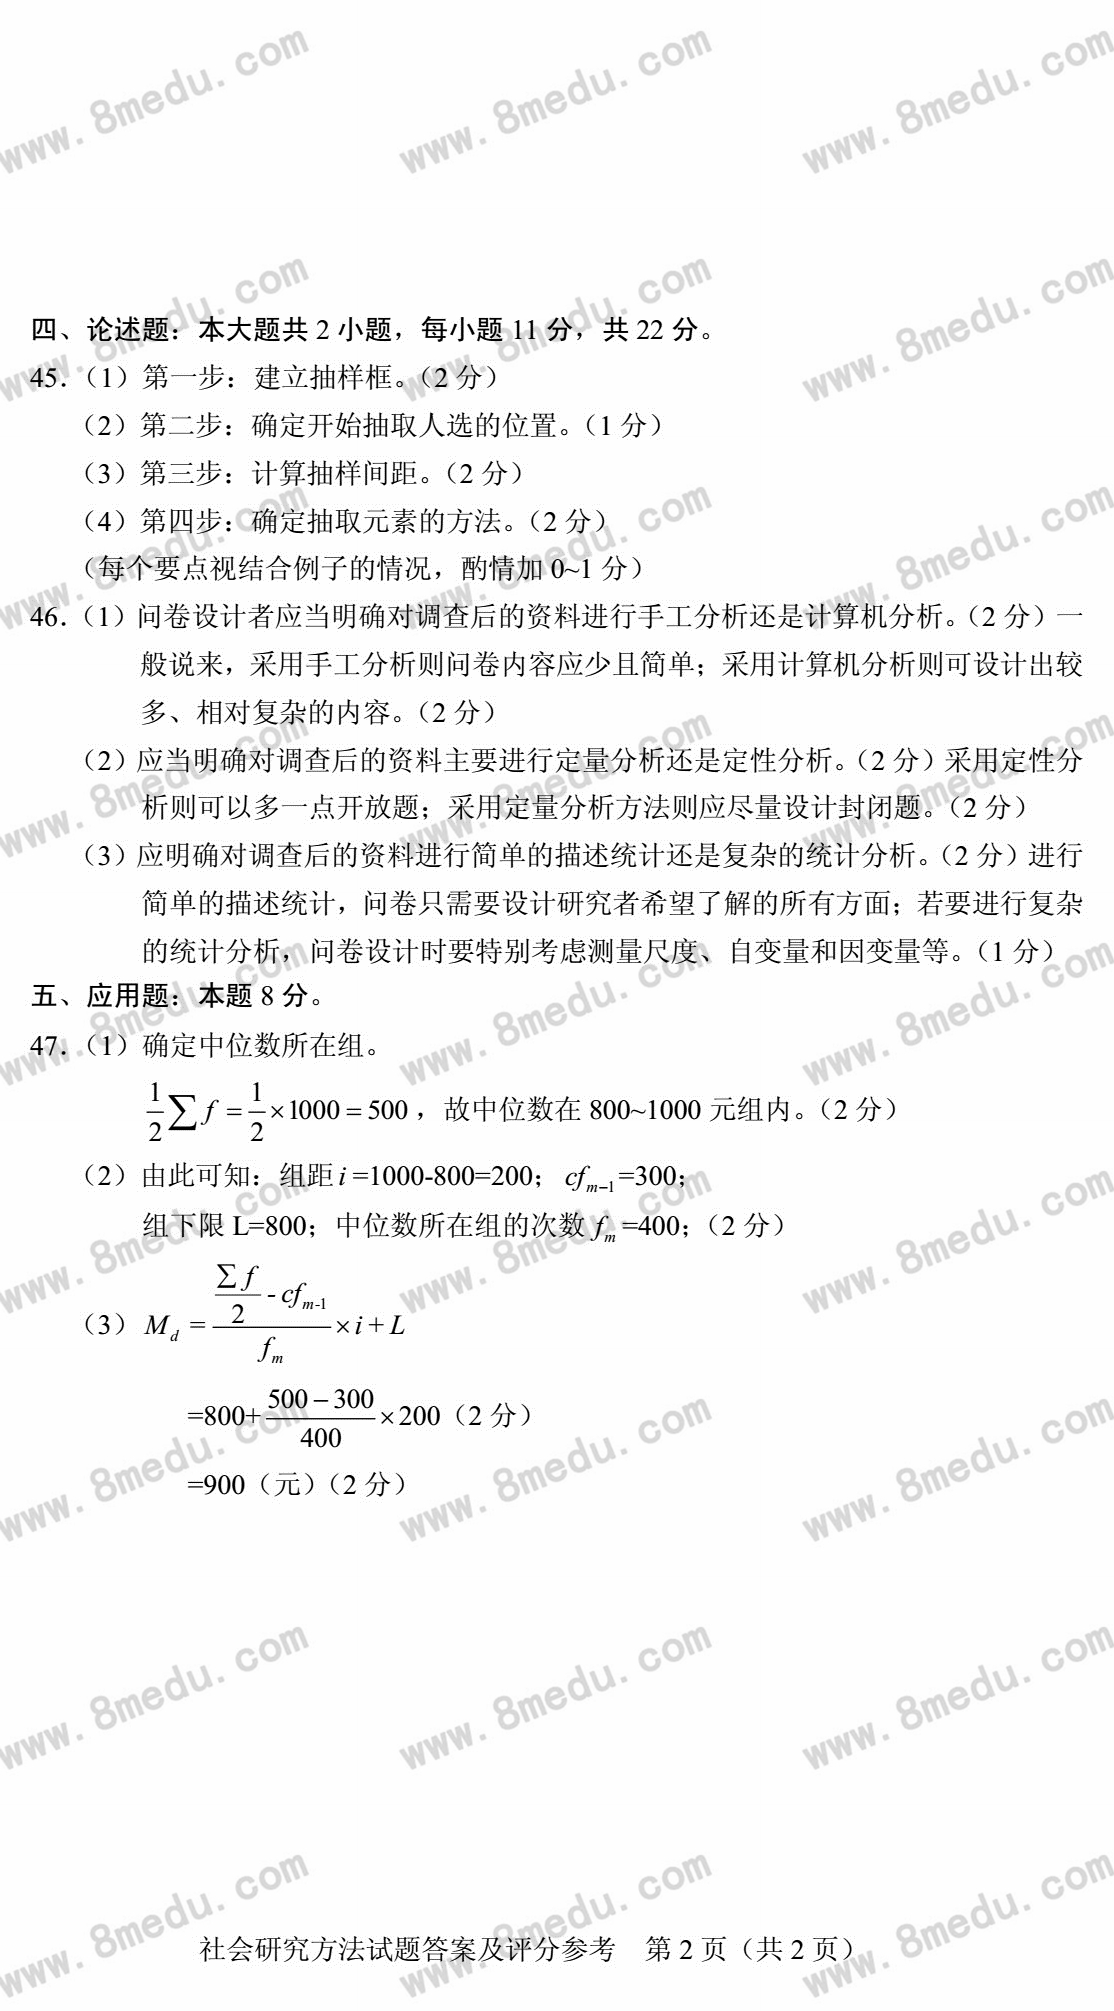 贵州省2018年4月自学考试社会研究方法03350真题及答案